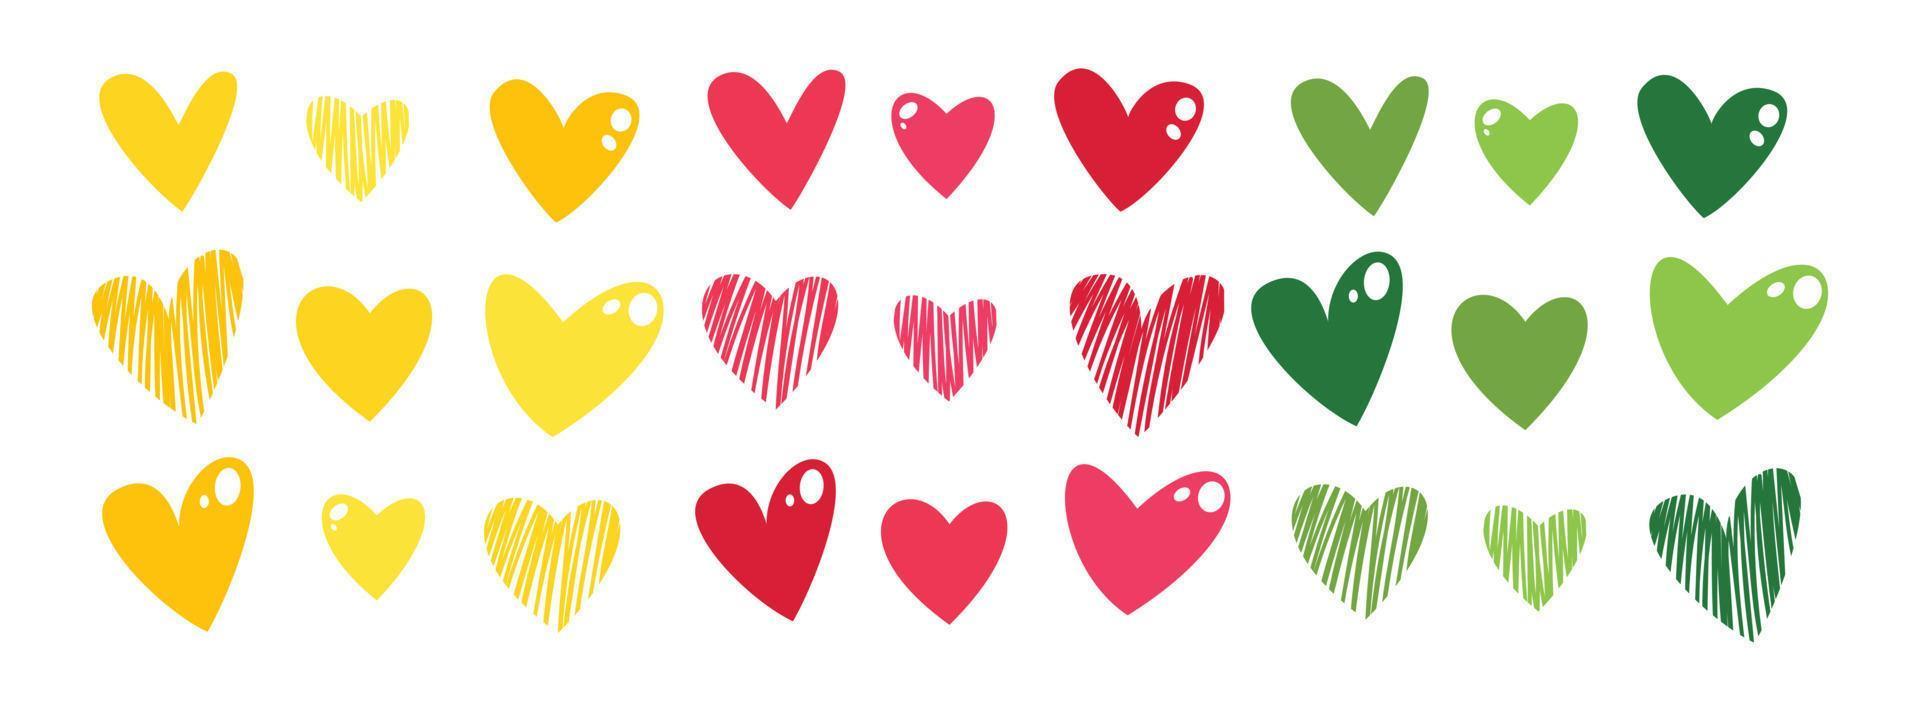 coleção de corações bonitos desenhados à mão. corações de cor. elementos de design de forma de coração prontos para cartões de felicitações, banners, boletins informativos. pode ser usado para modelagem e impressão. vetor